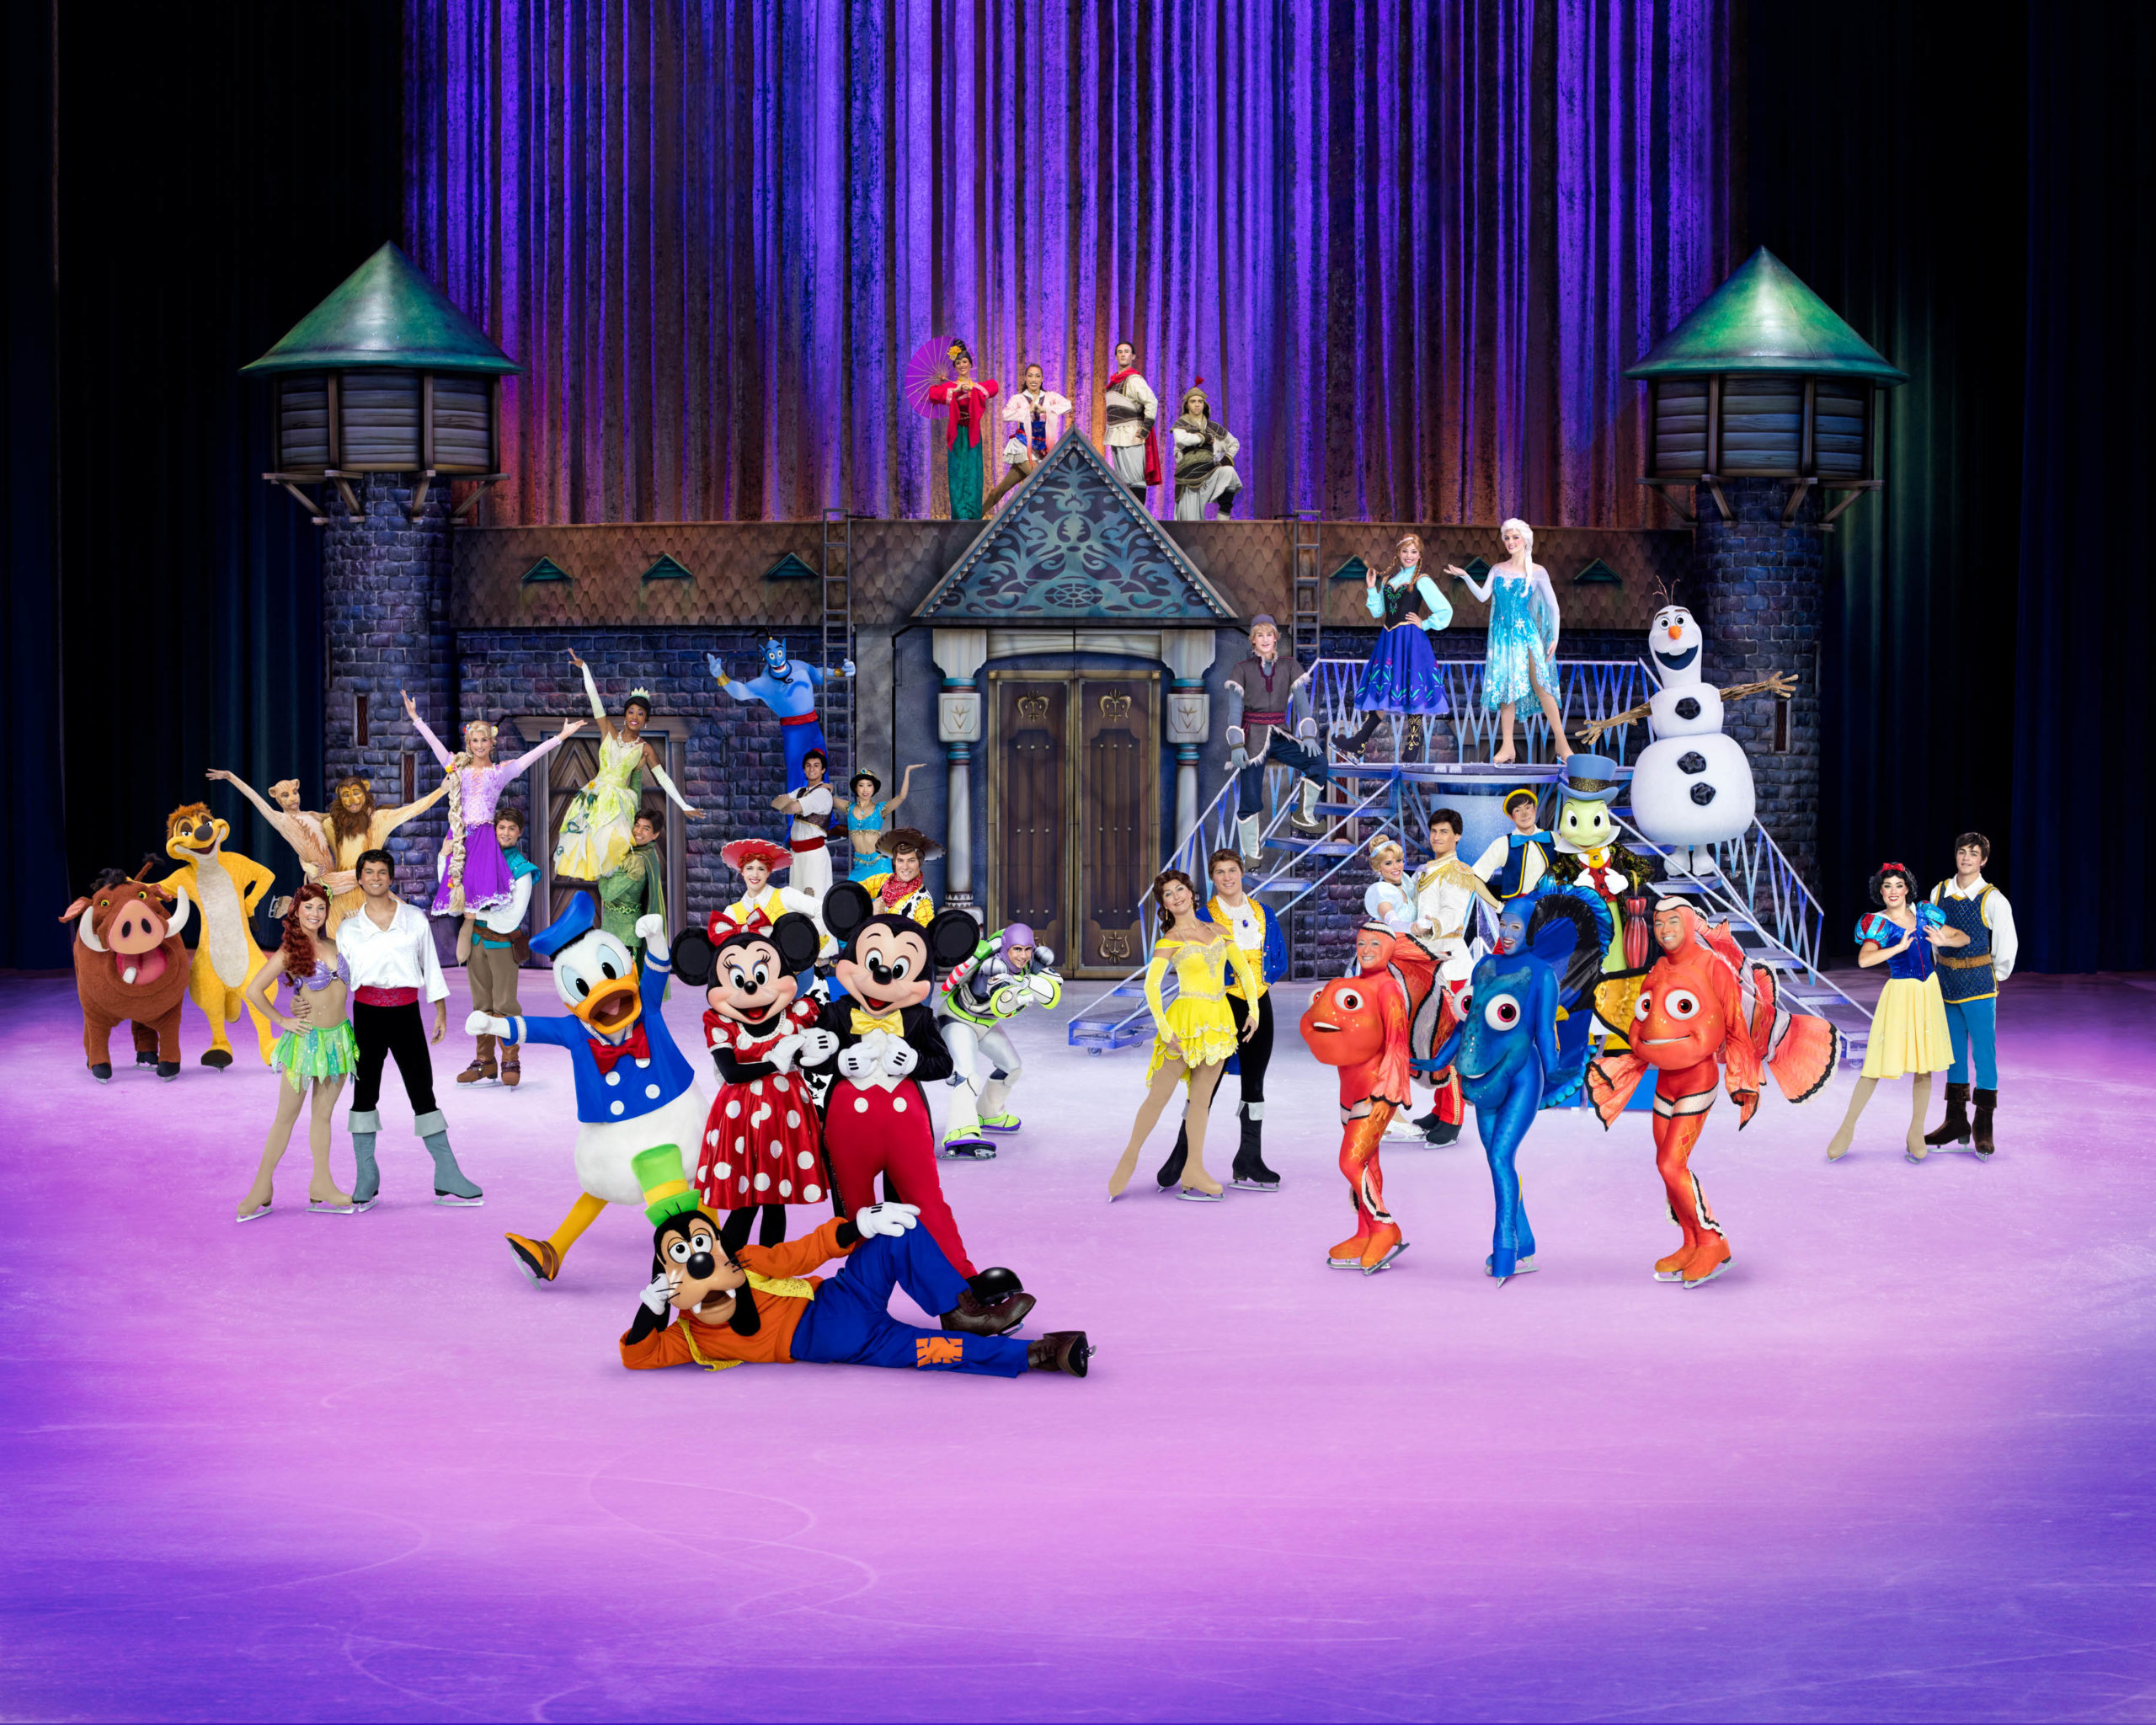 Disney On Ice volta ao Brasil com o espetáculo "100 Anos de Magia"